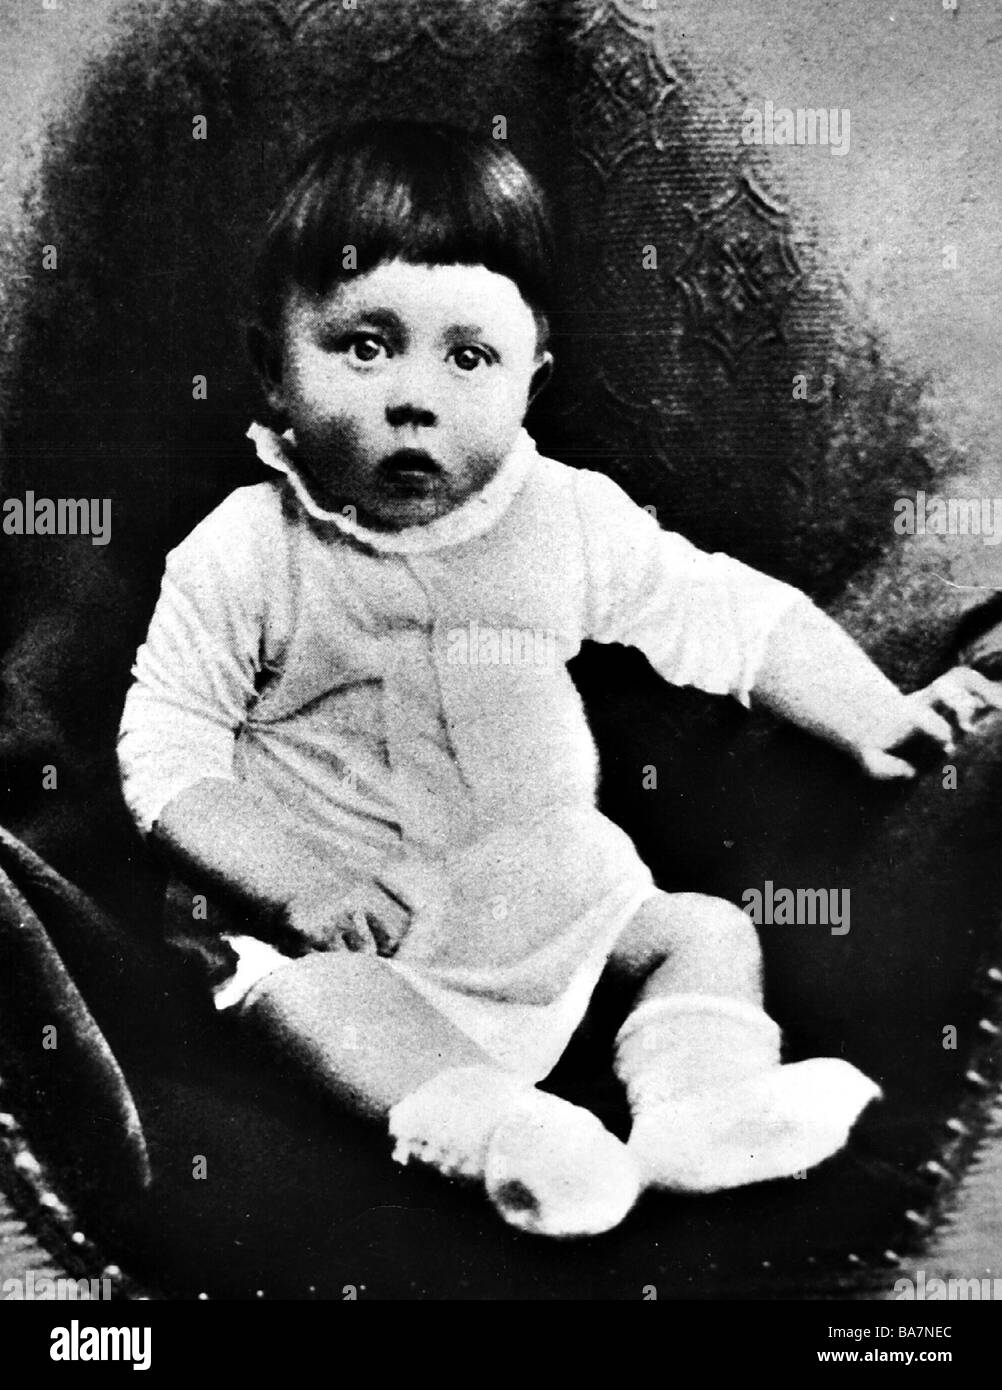 Hitler, Adolf, 20.4.1889 - 30.4.1945, German politician (NSDAP) Chancellor since 30.1.1933, junior image, photogaphy, 1889 / 1890, Stock Photo